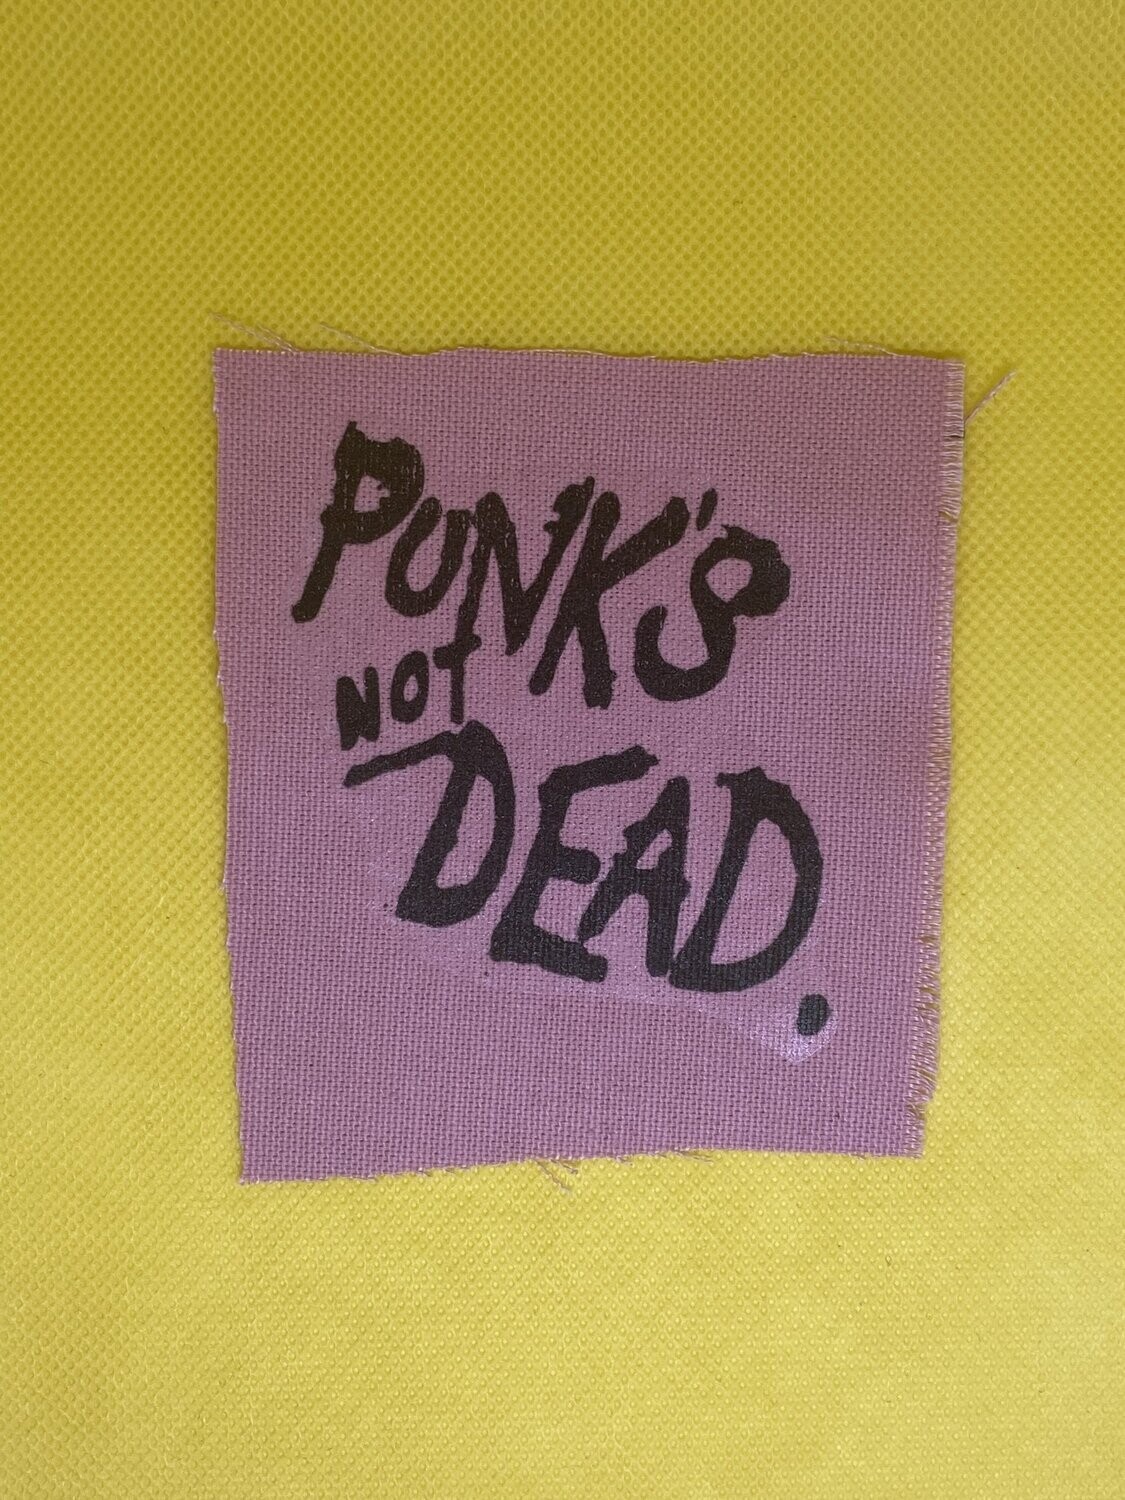 Punk's not Dead Patch